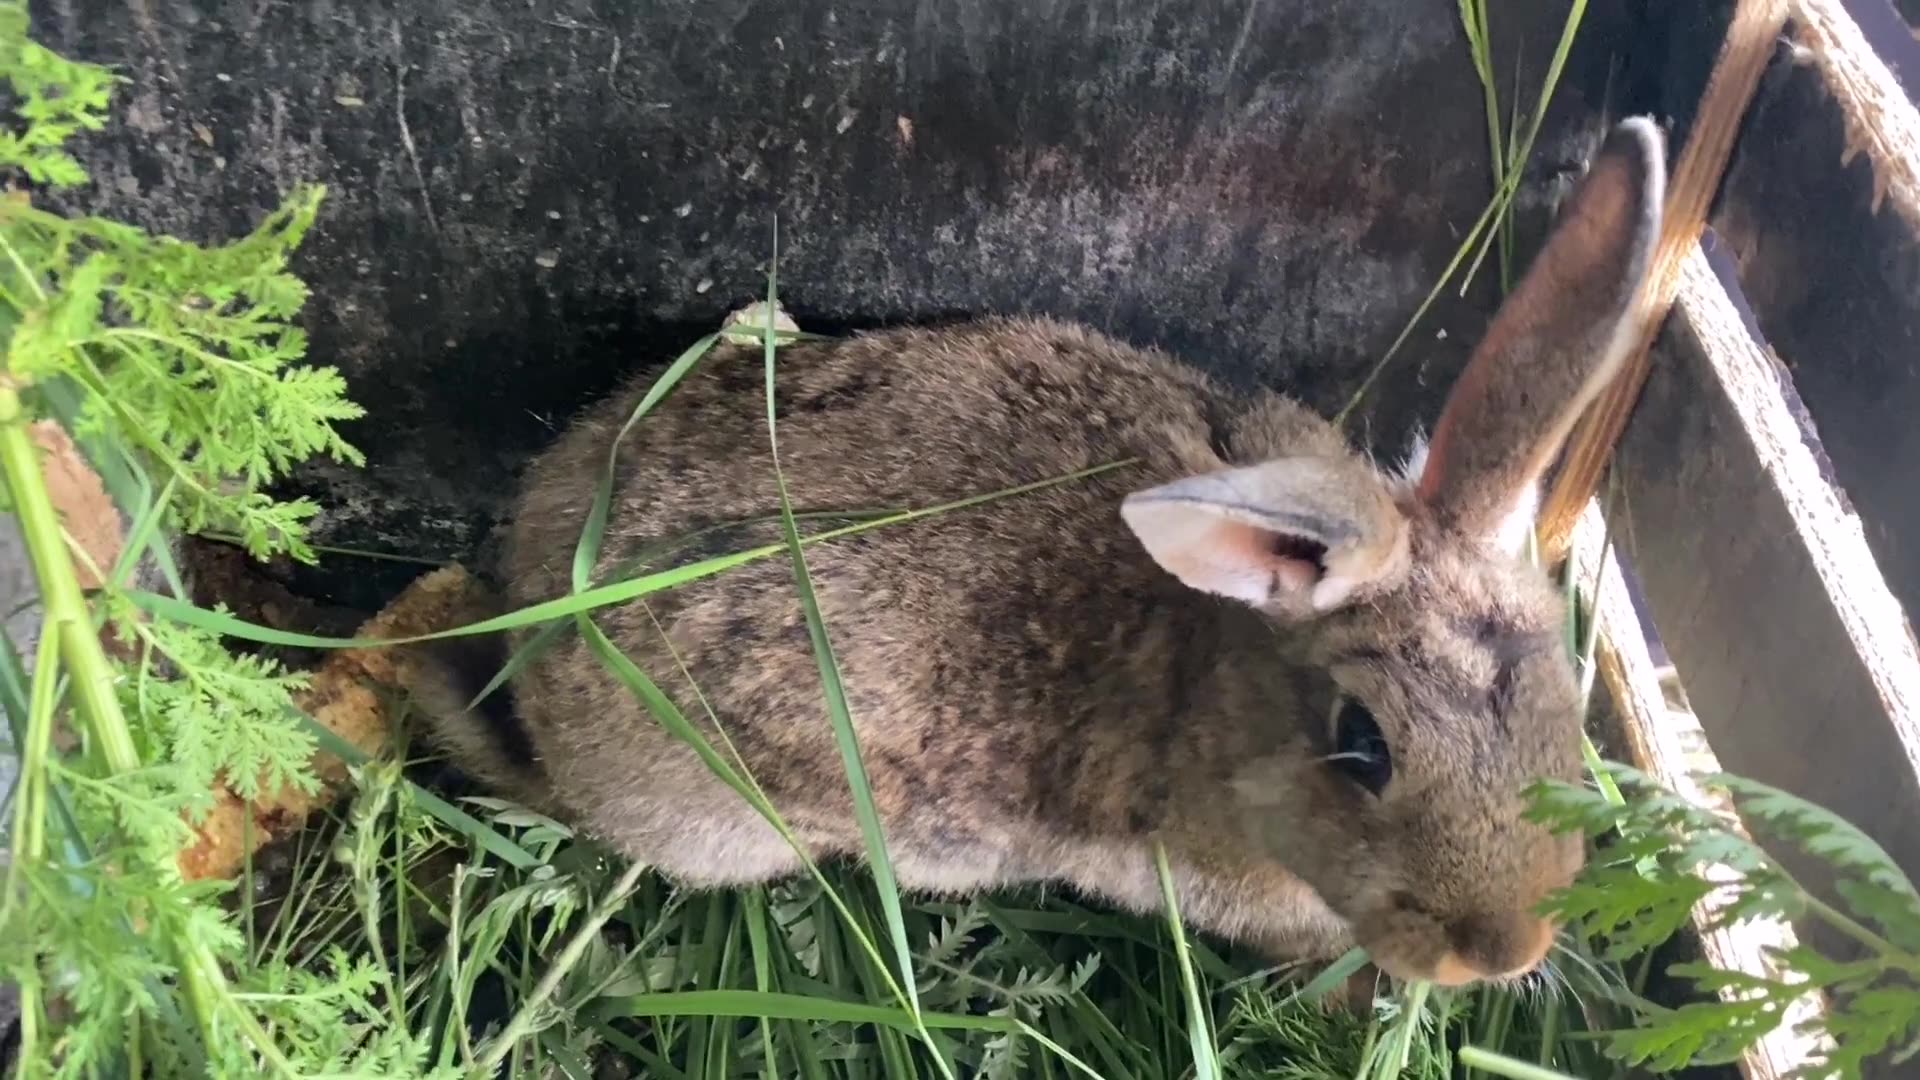 兔子吃草的样子图片